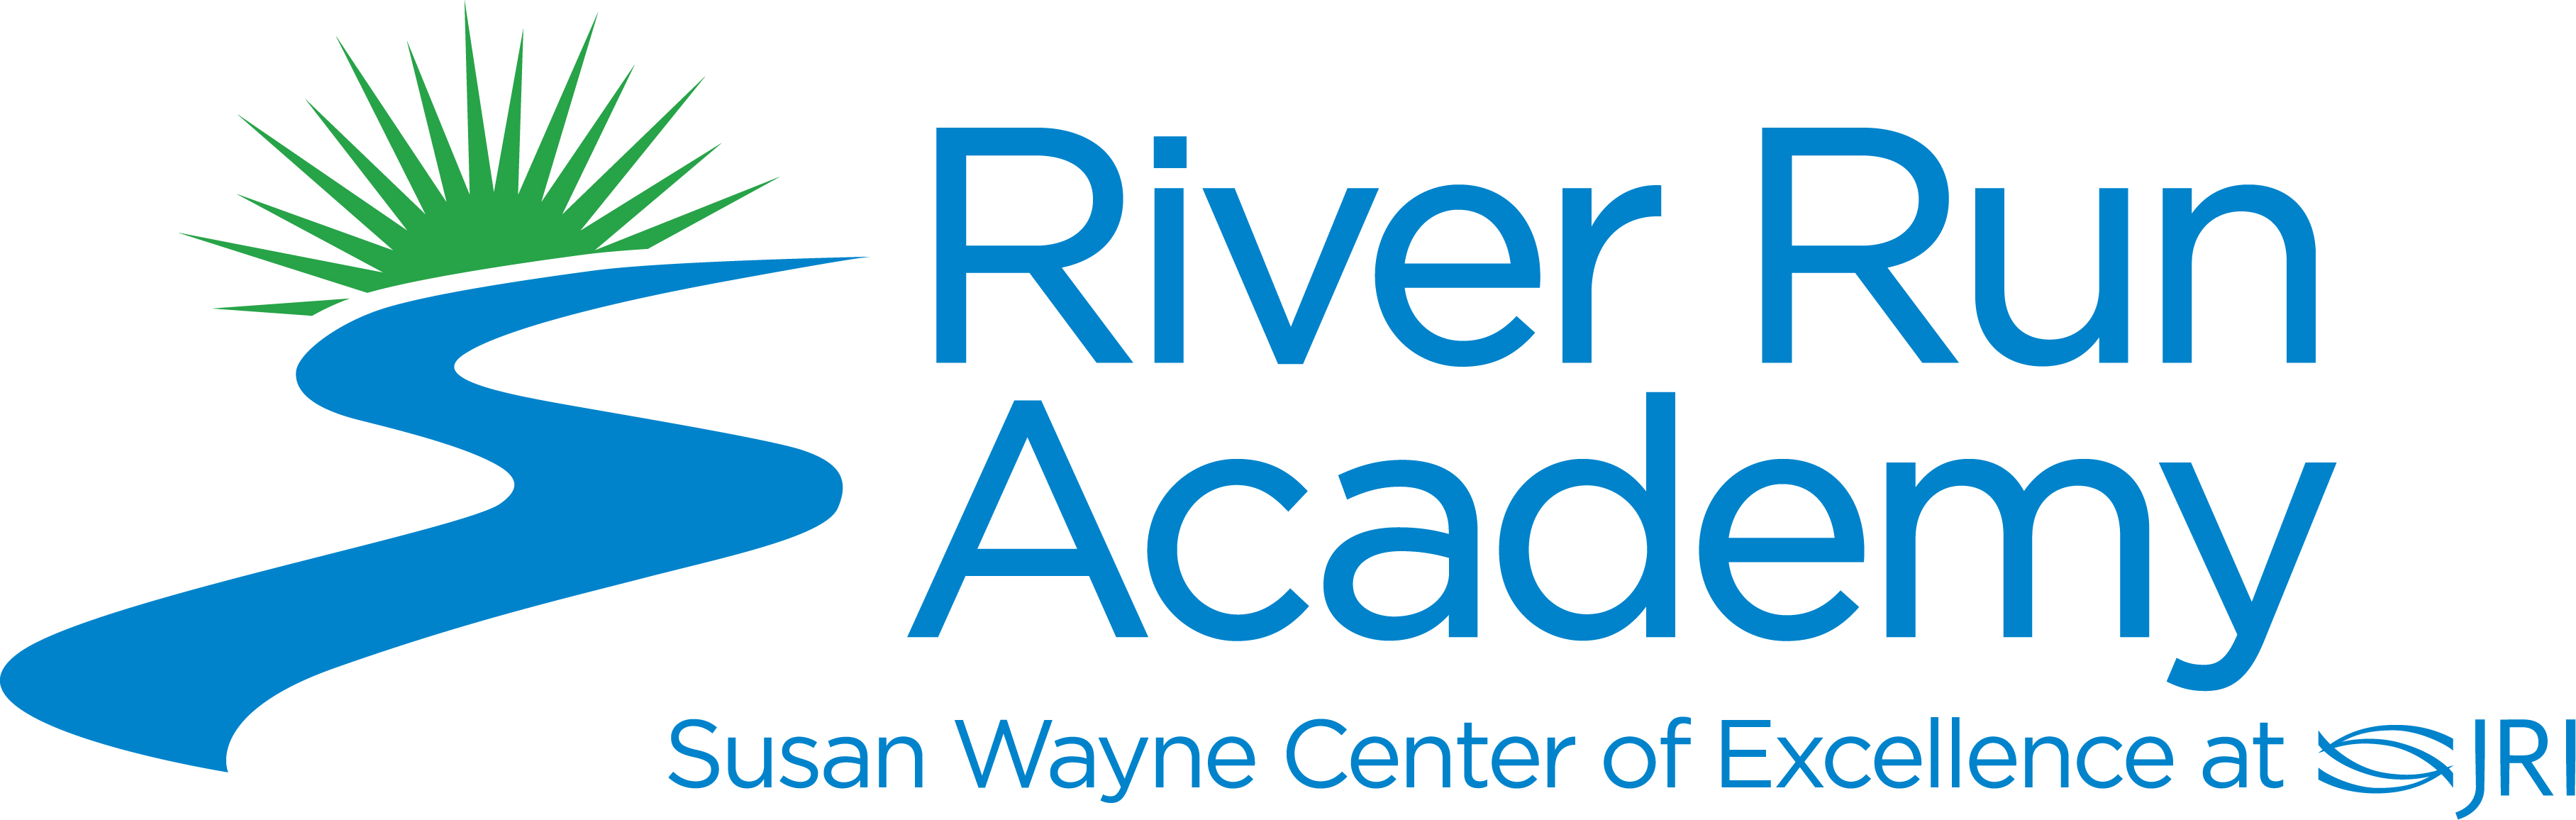 River Run Academy logo